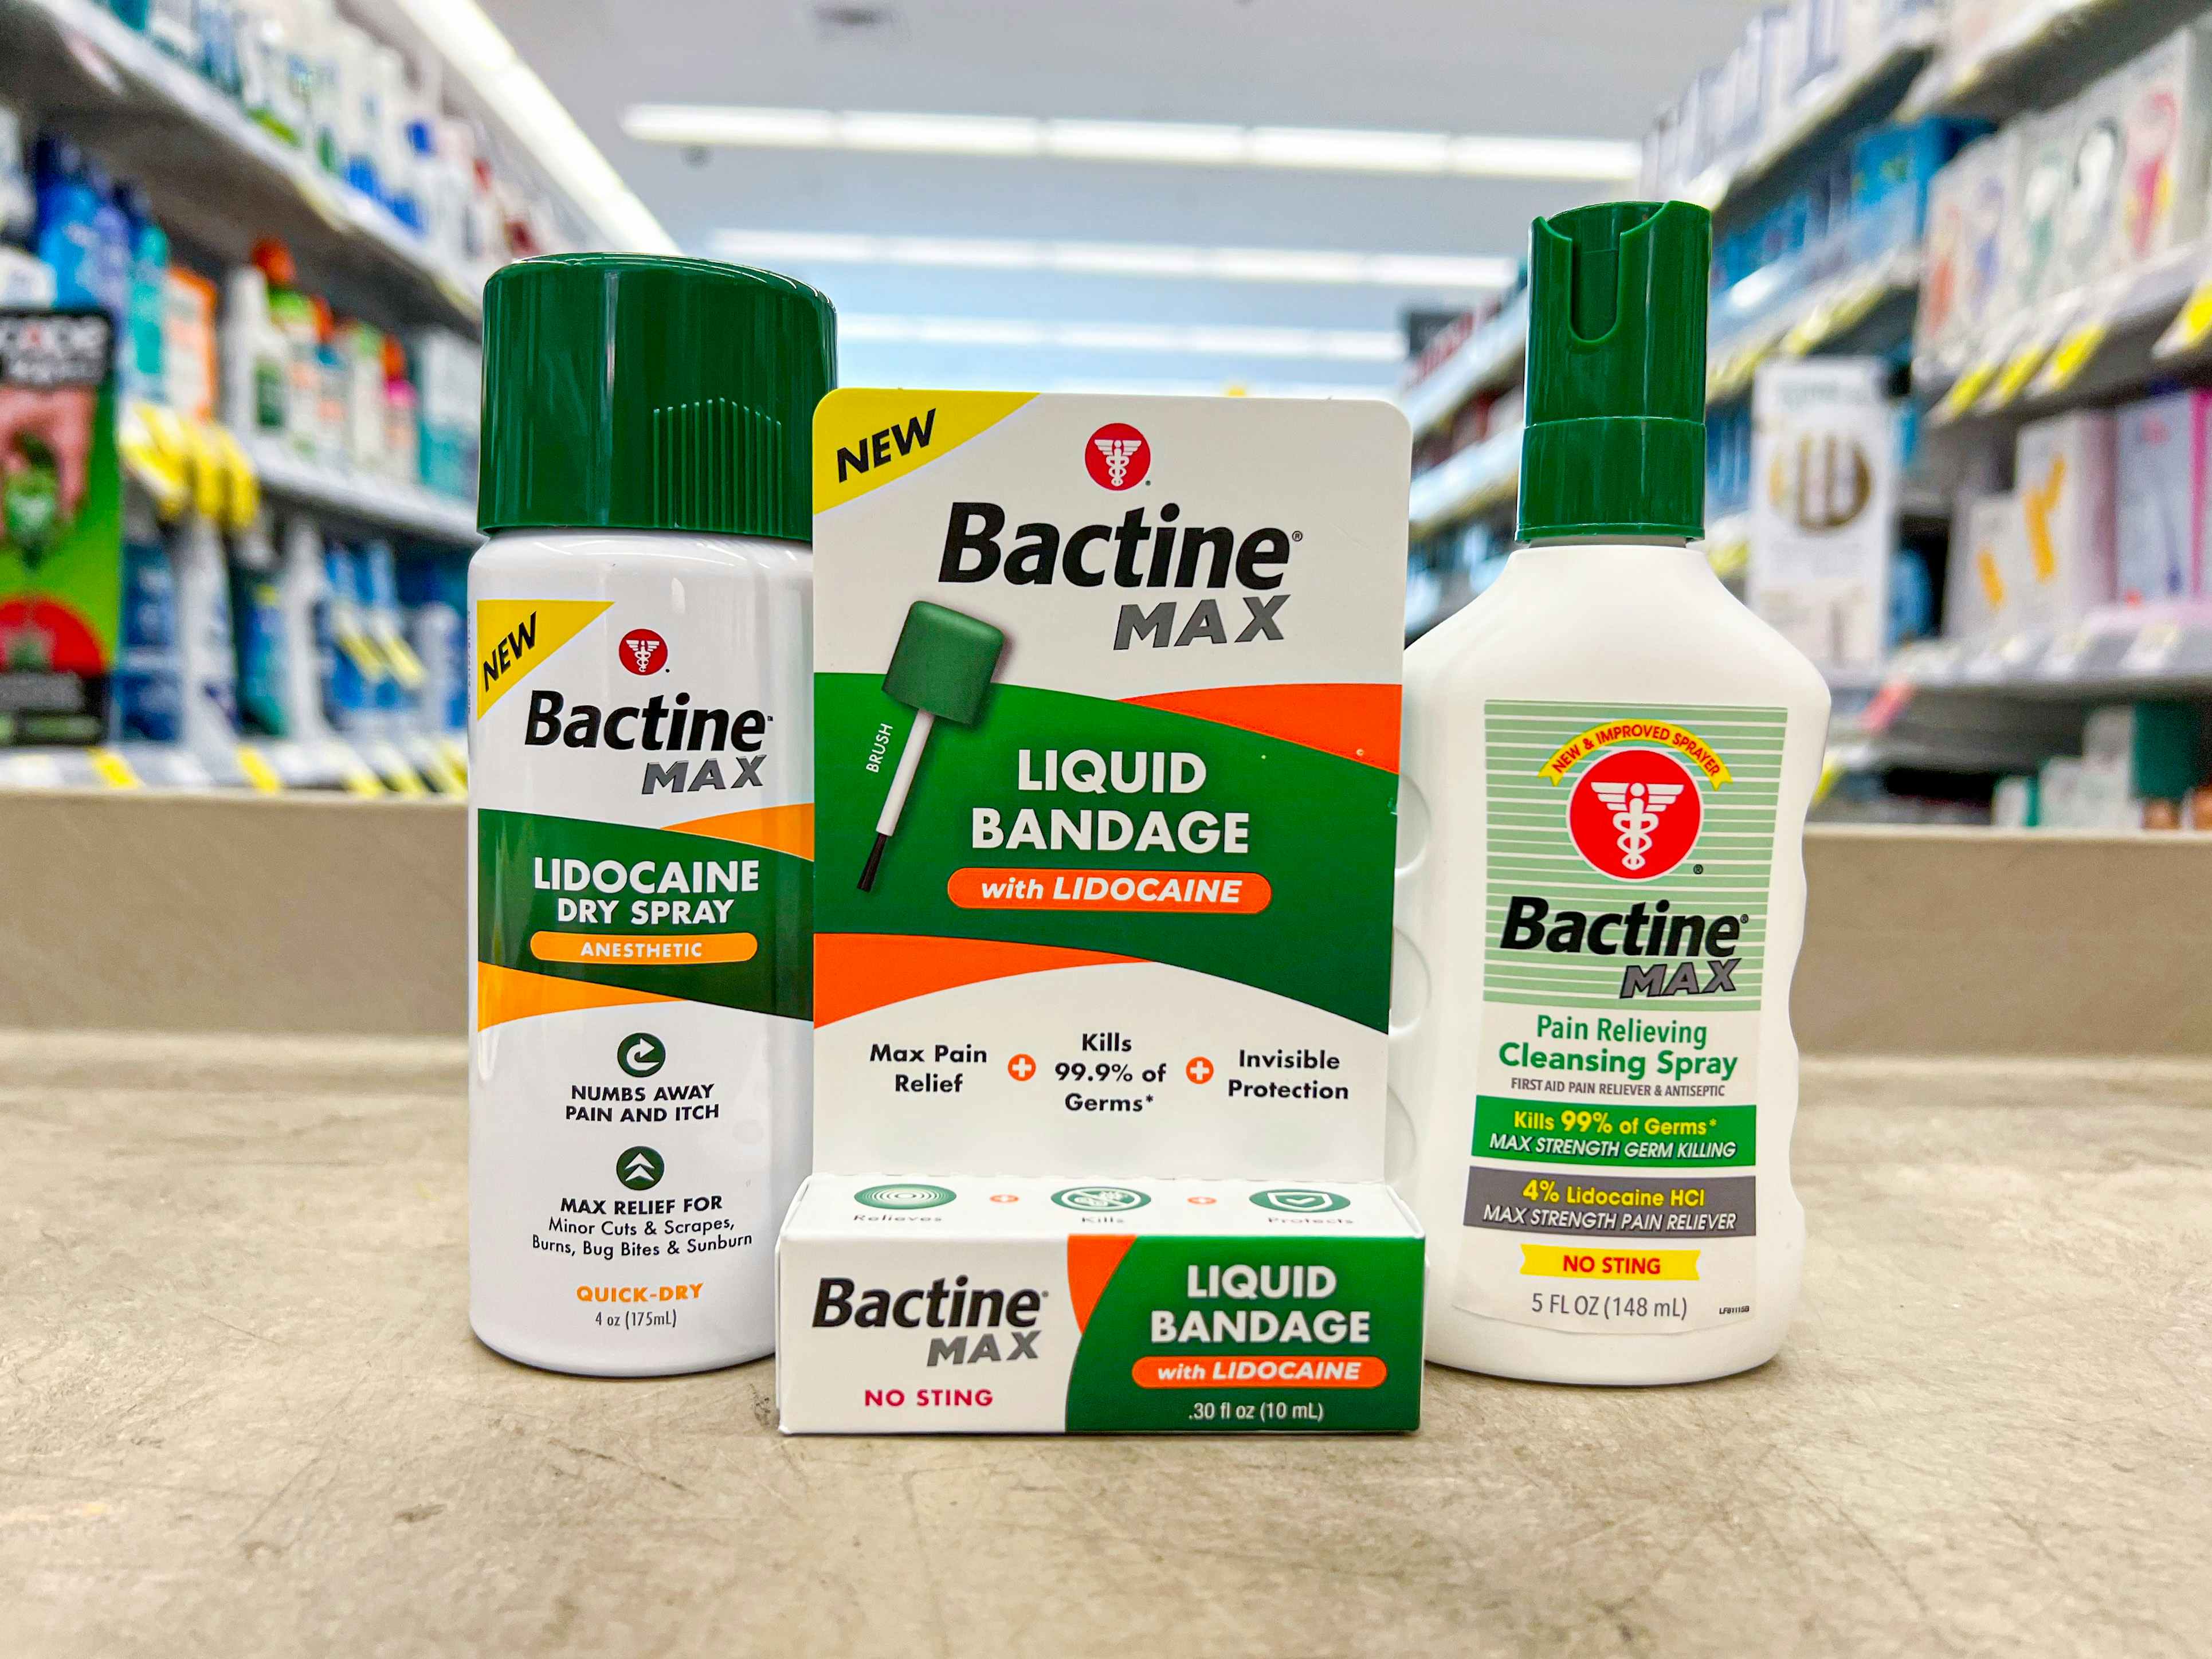 Bactine Max products at Walgreens